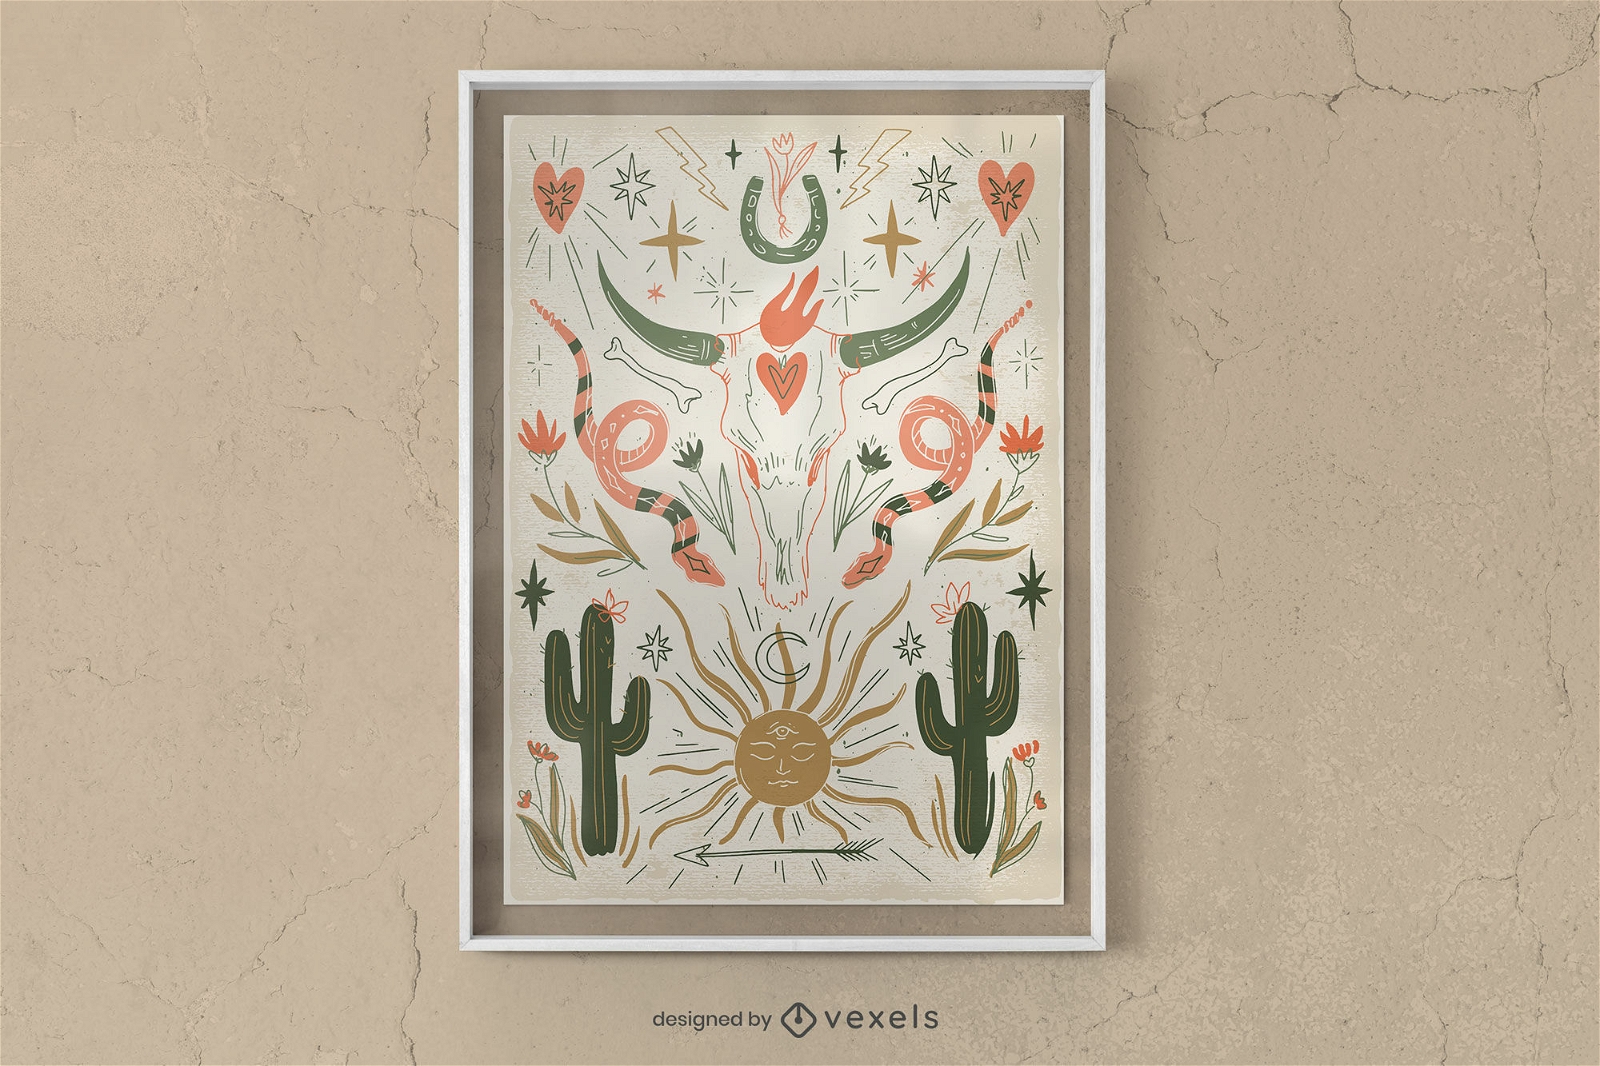 Posterdesign mit mexikanischen Elementen im Boho-Stil